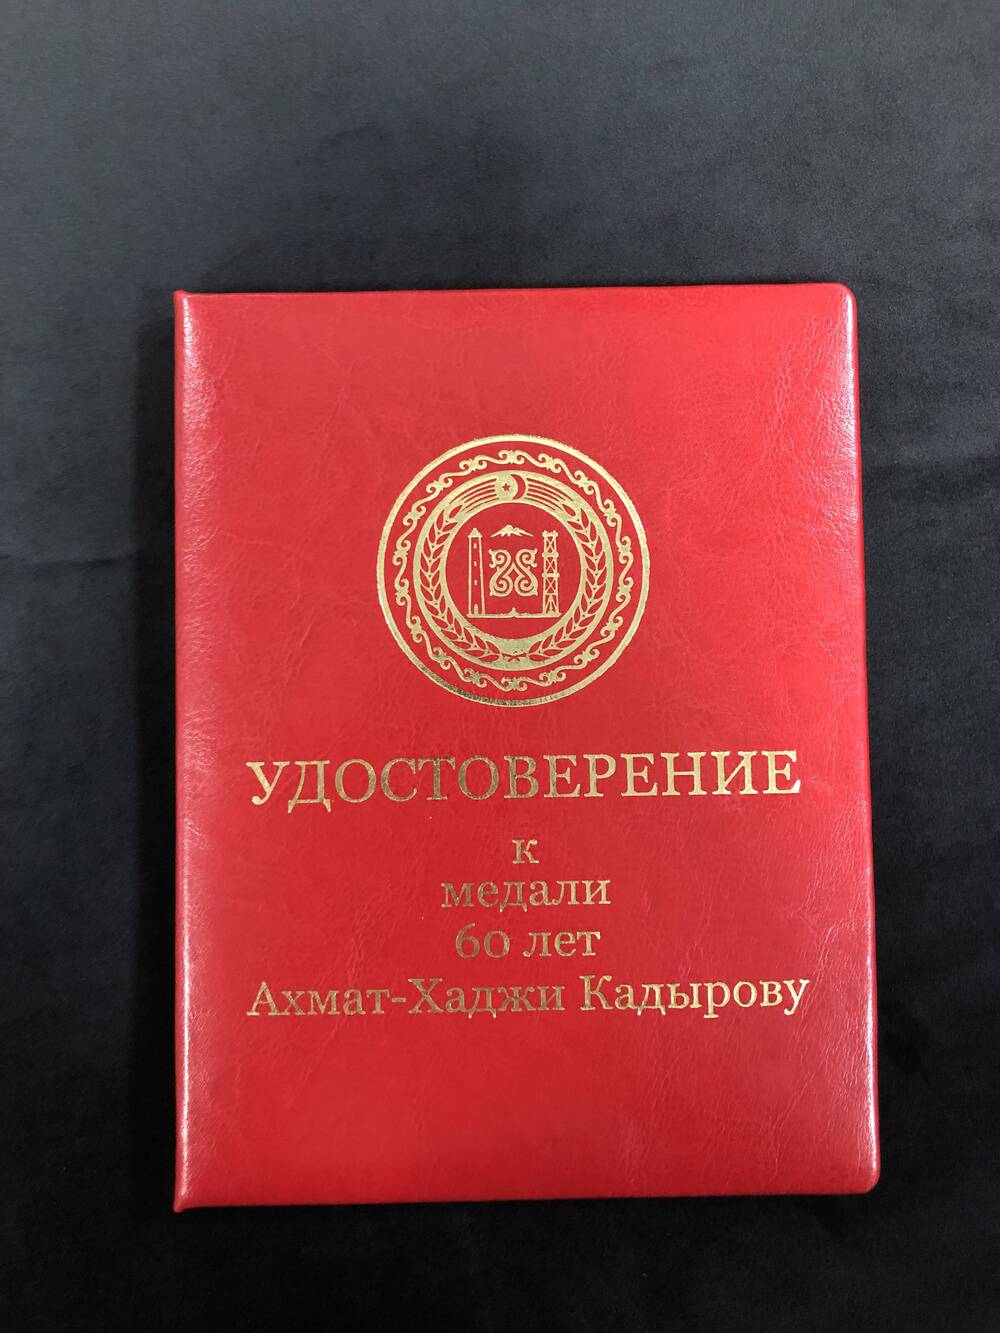 Макет удостоверения к медали 60 лет Ахмат_хаджи Кадырову.